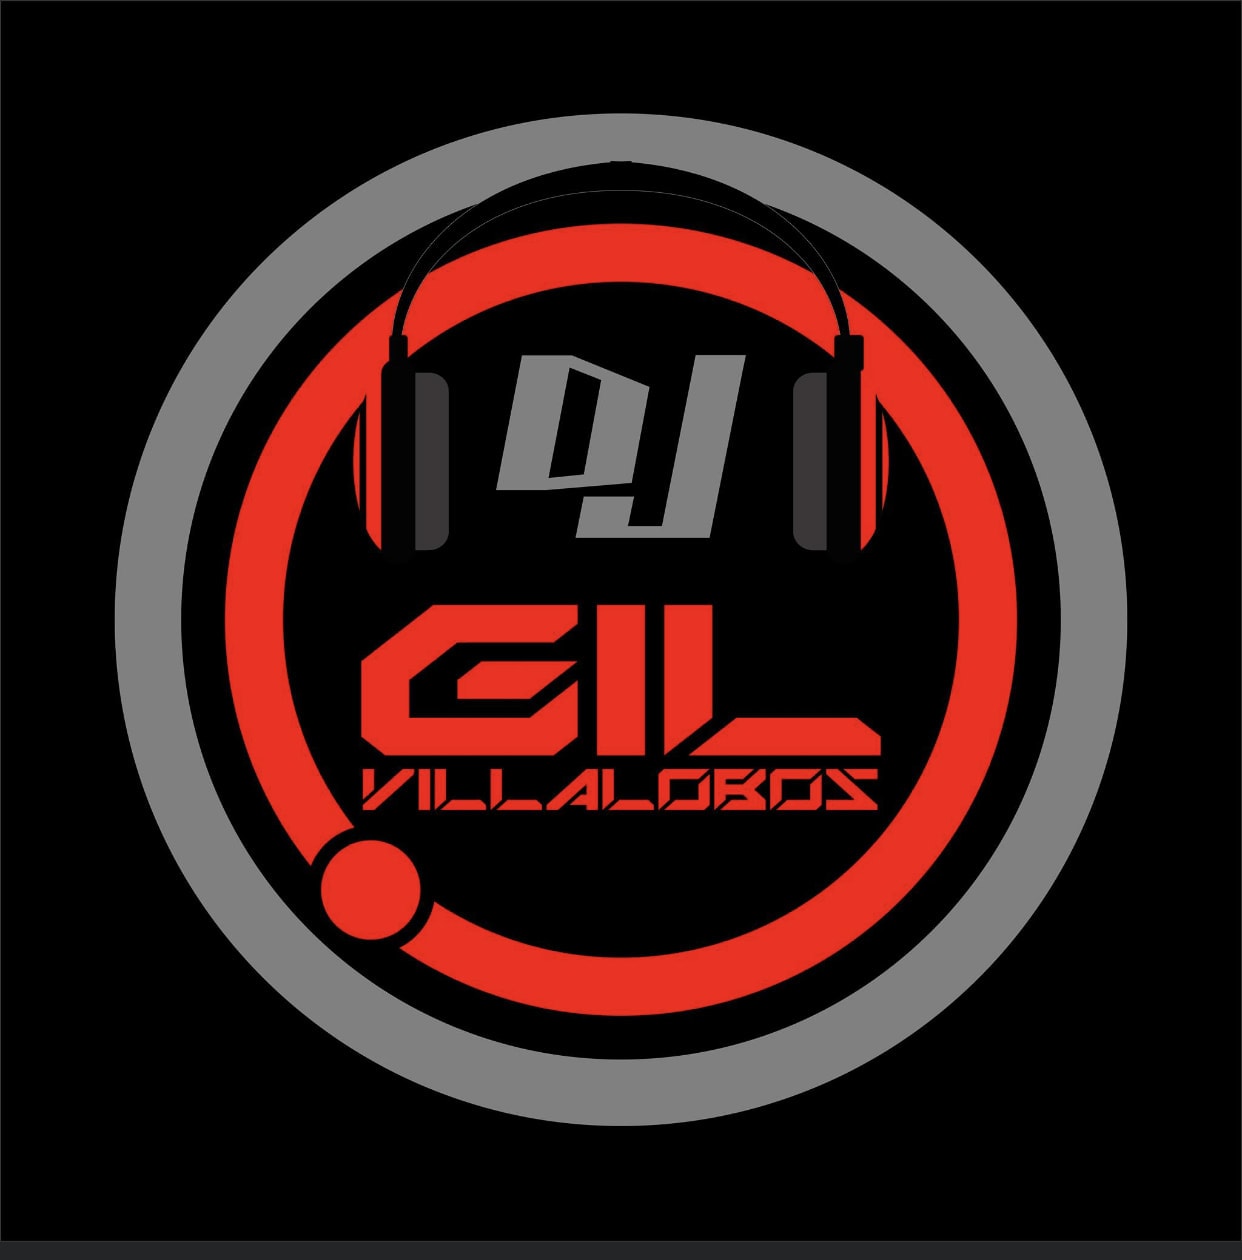 Dj Gil Villalobos